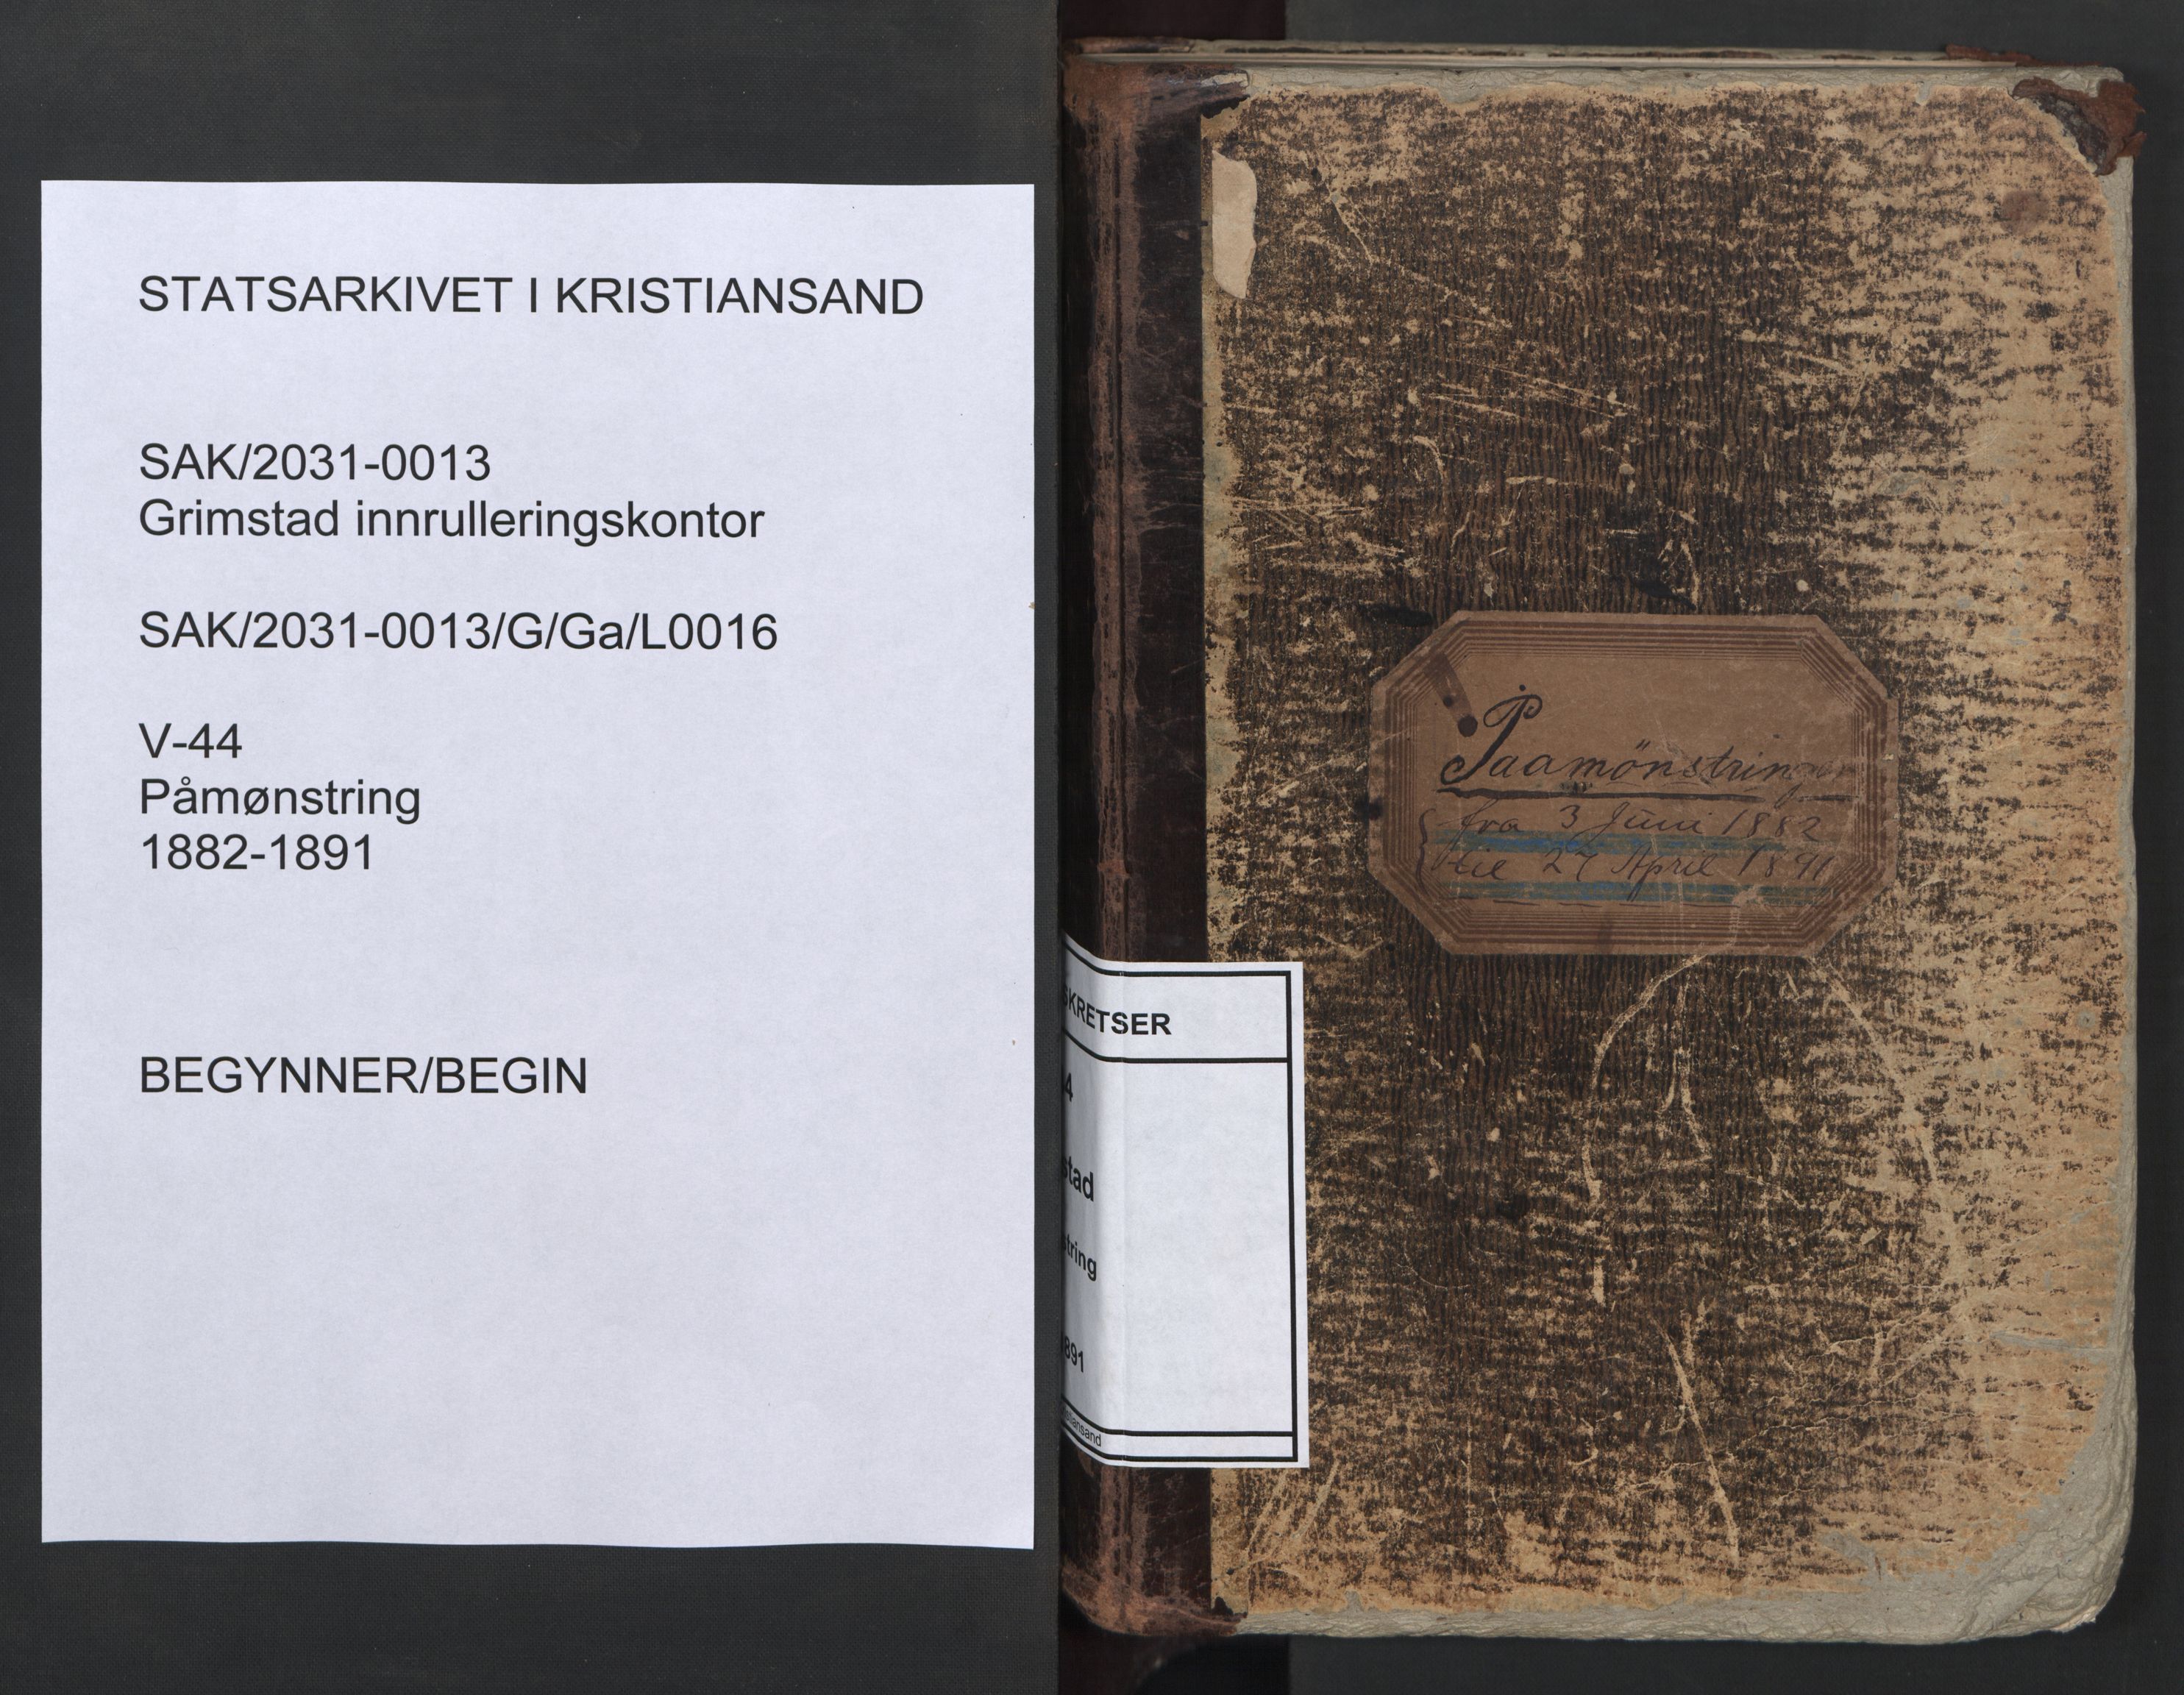 Grimstad mønstringskrets, SAK/2031-0013/G/Ga/L0016: Påmønstring, V-44, 1882-1891, p. 1